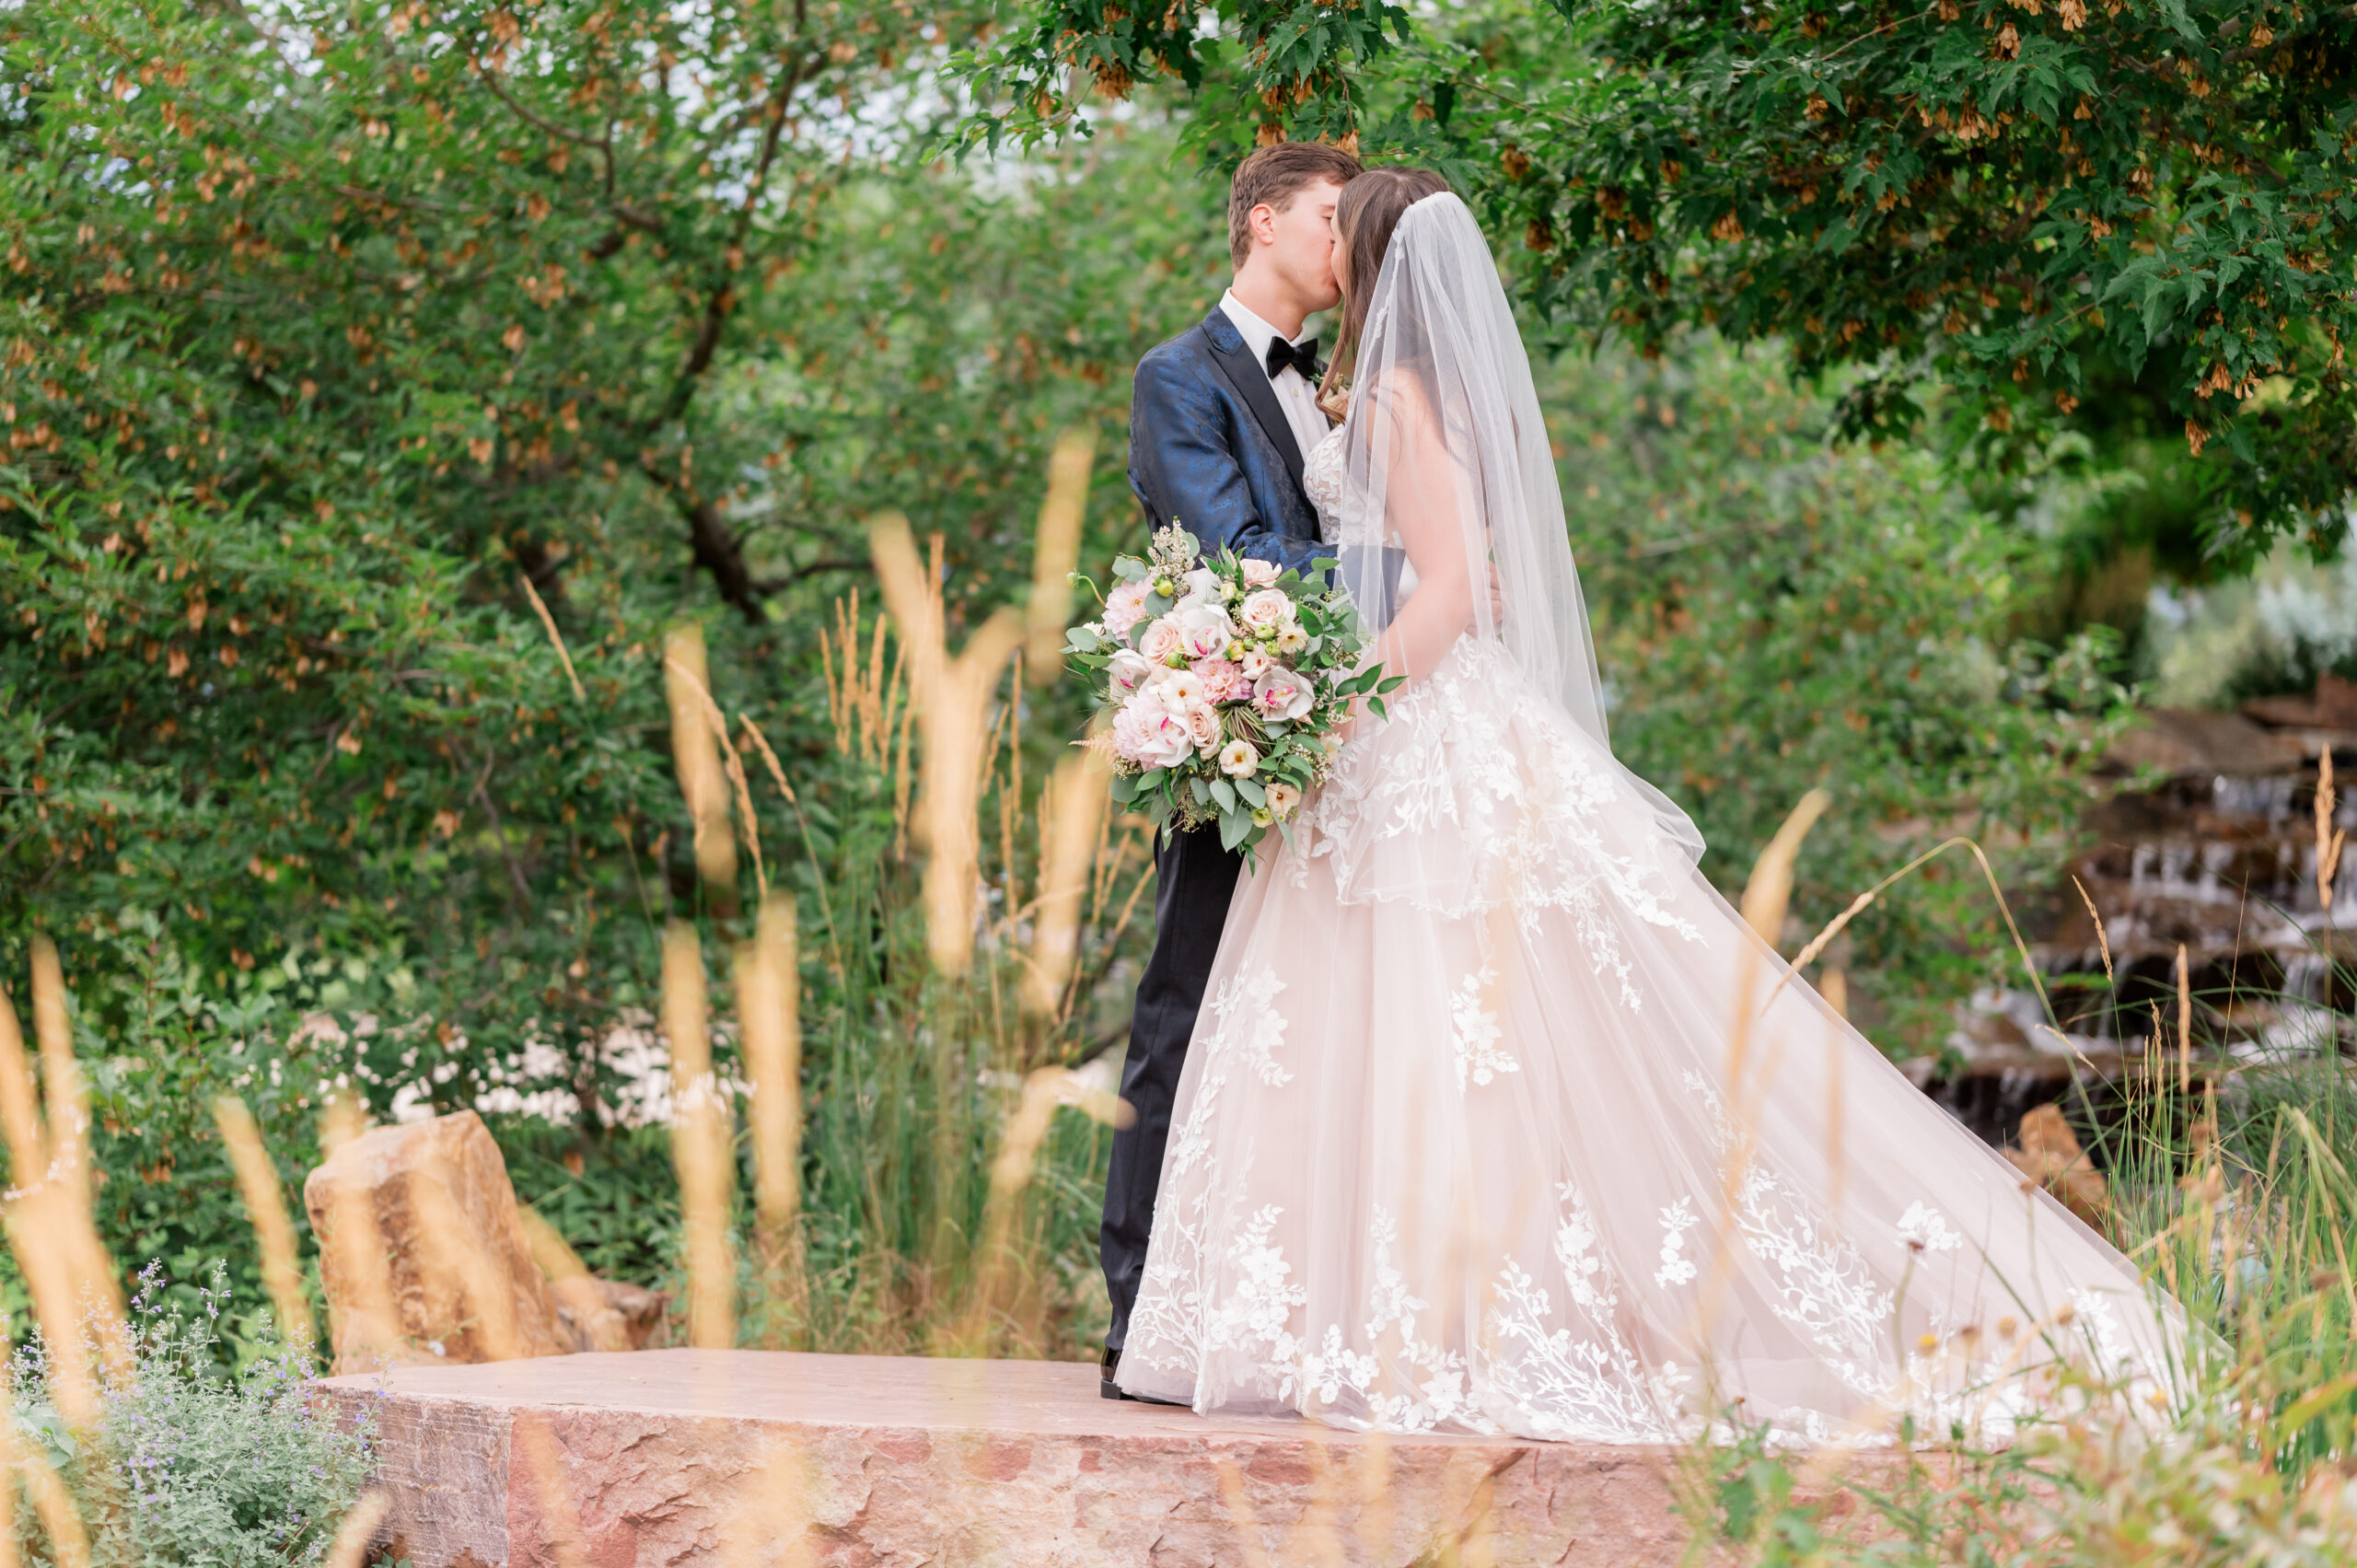 Summer Garden Wedding at Brookside in Berthoud Colorado - Britni Girard Photography - Colorado Wedding photographer